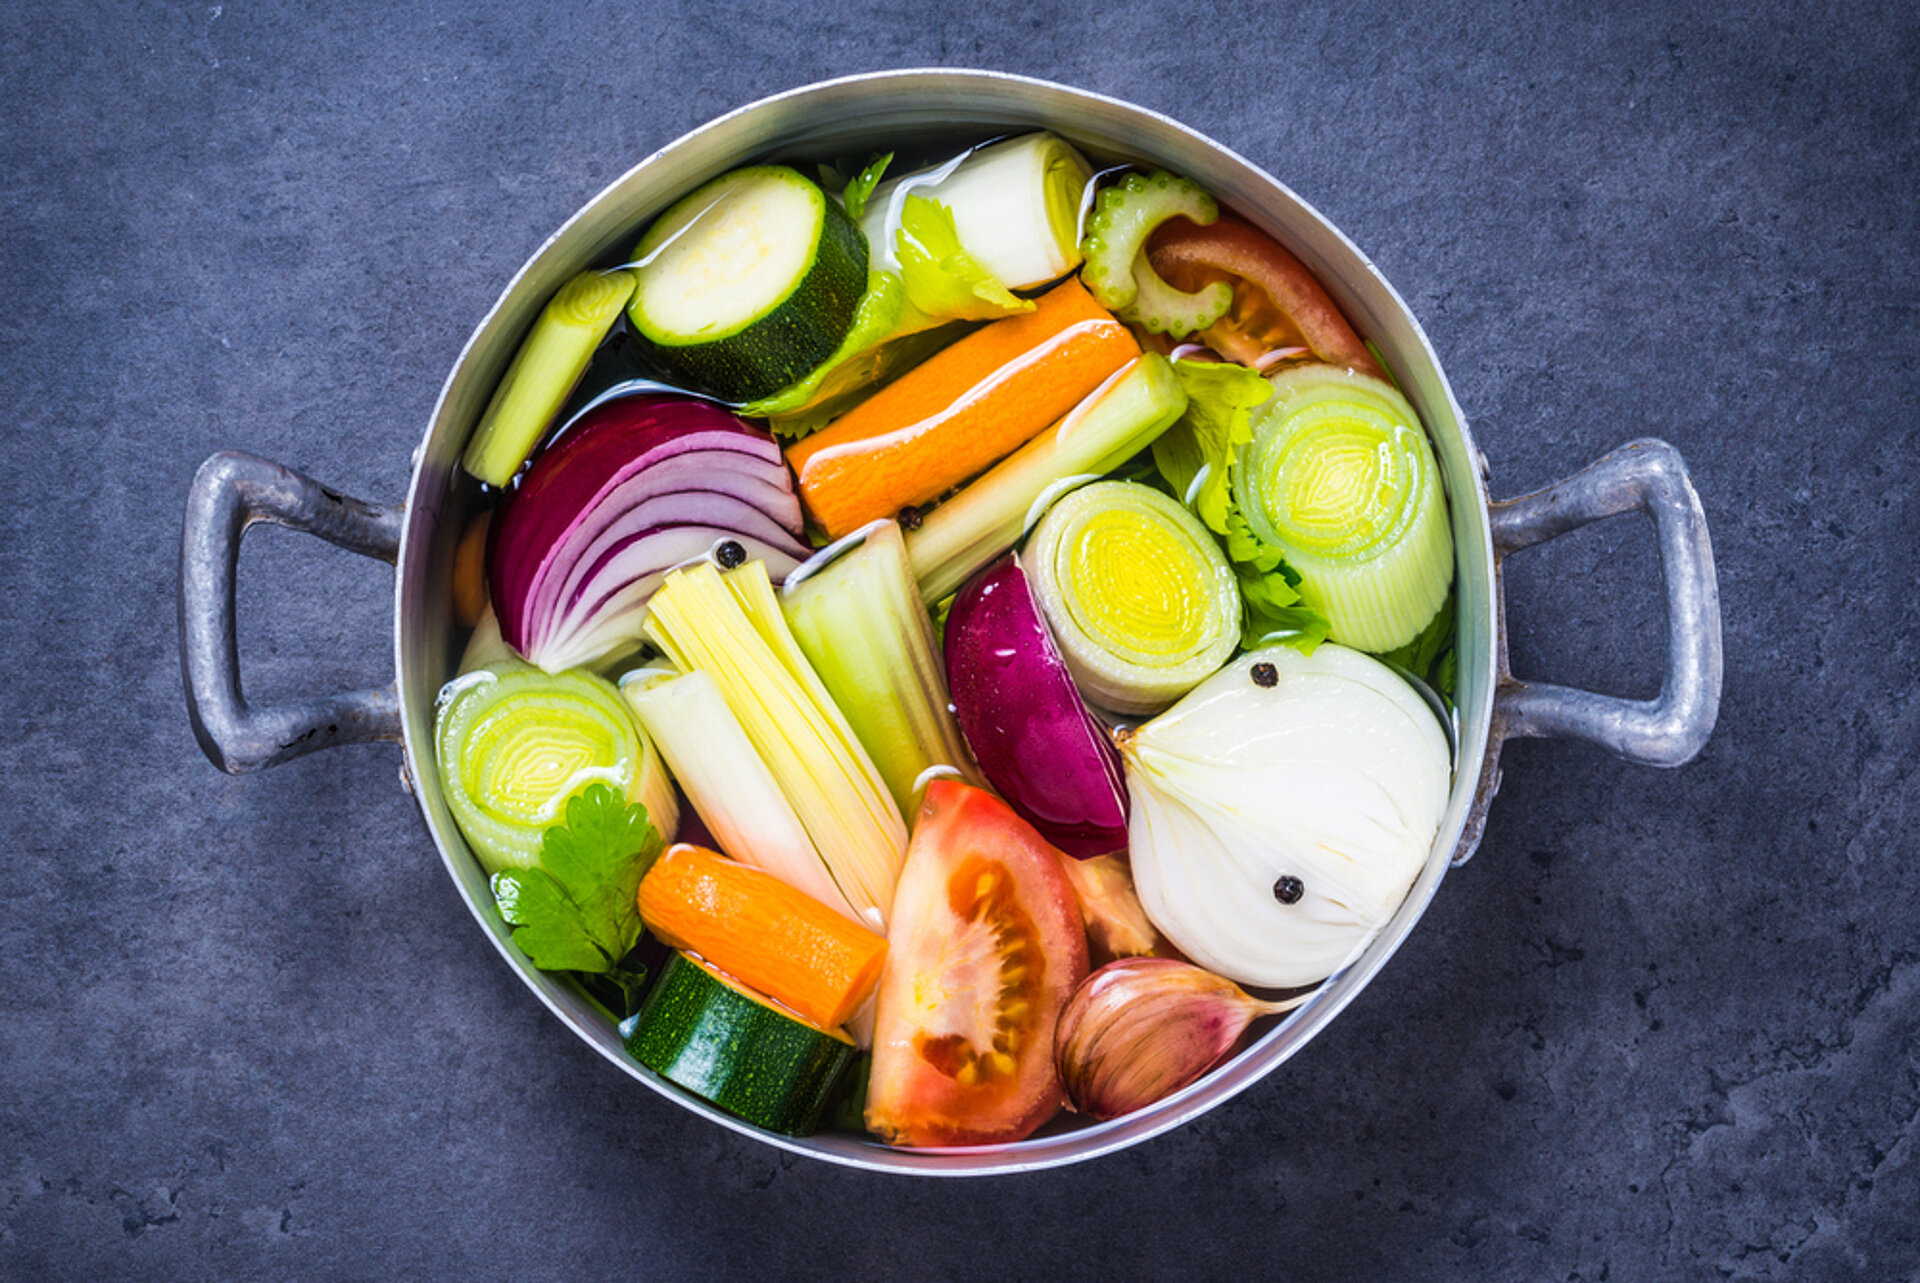 PuurGezond: Gaan vitamines uit groenten kapot tijdens het koken? hoe zit dat vezels?